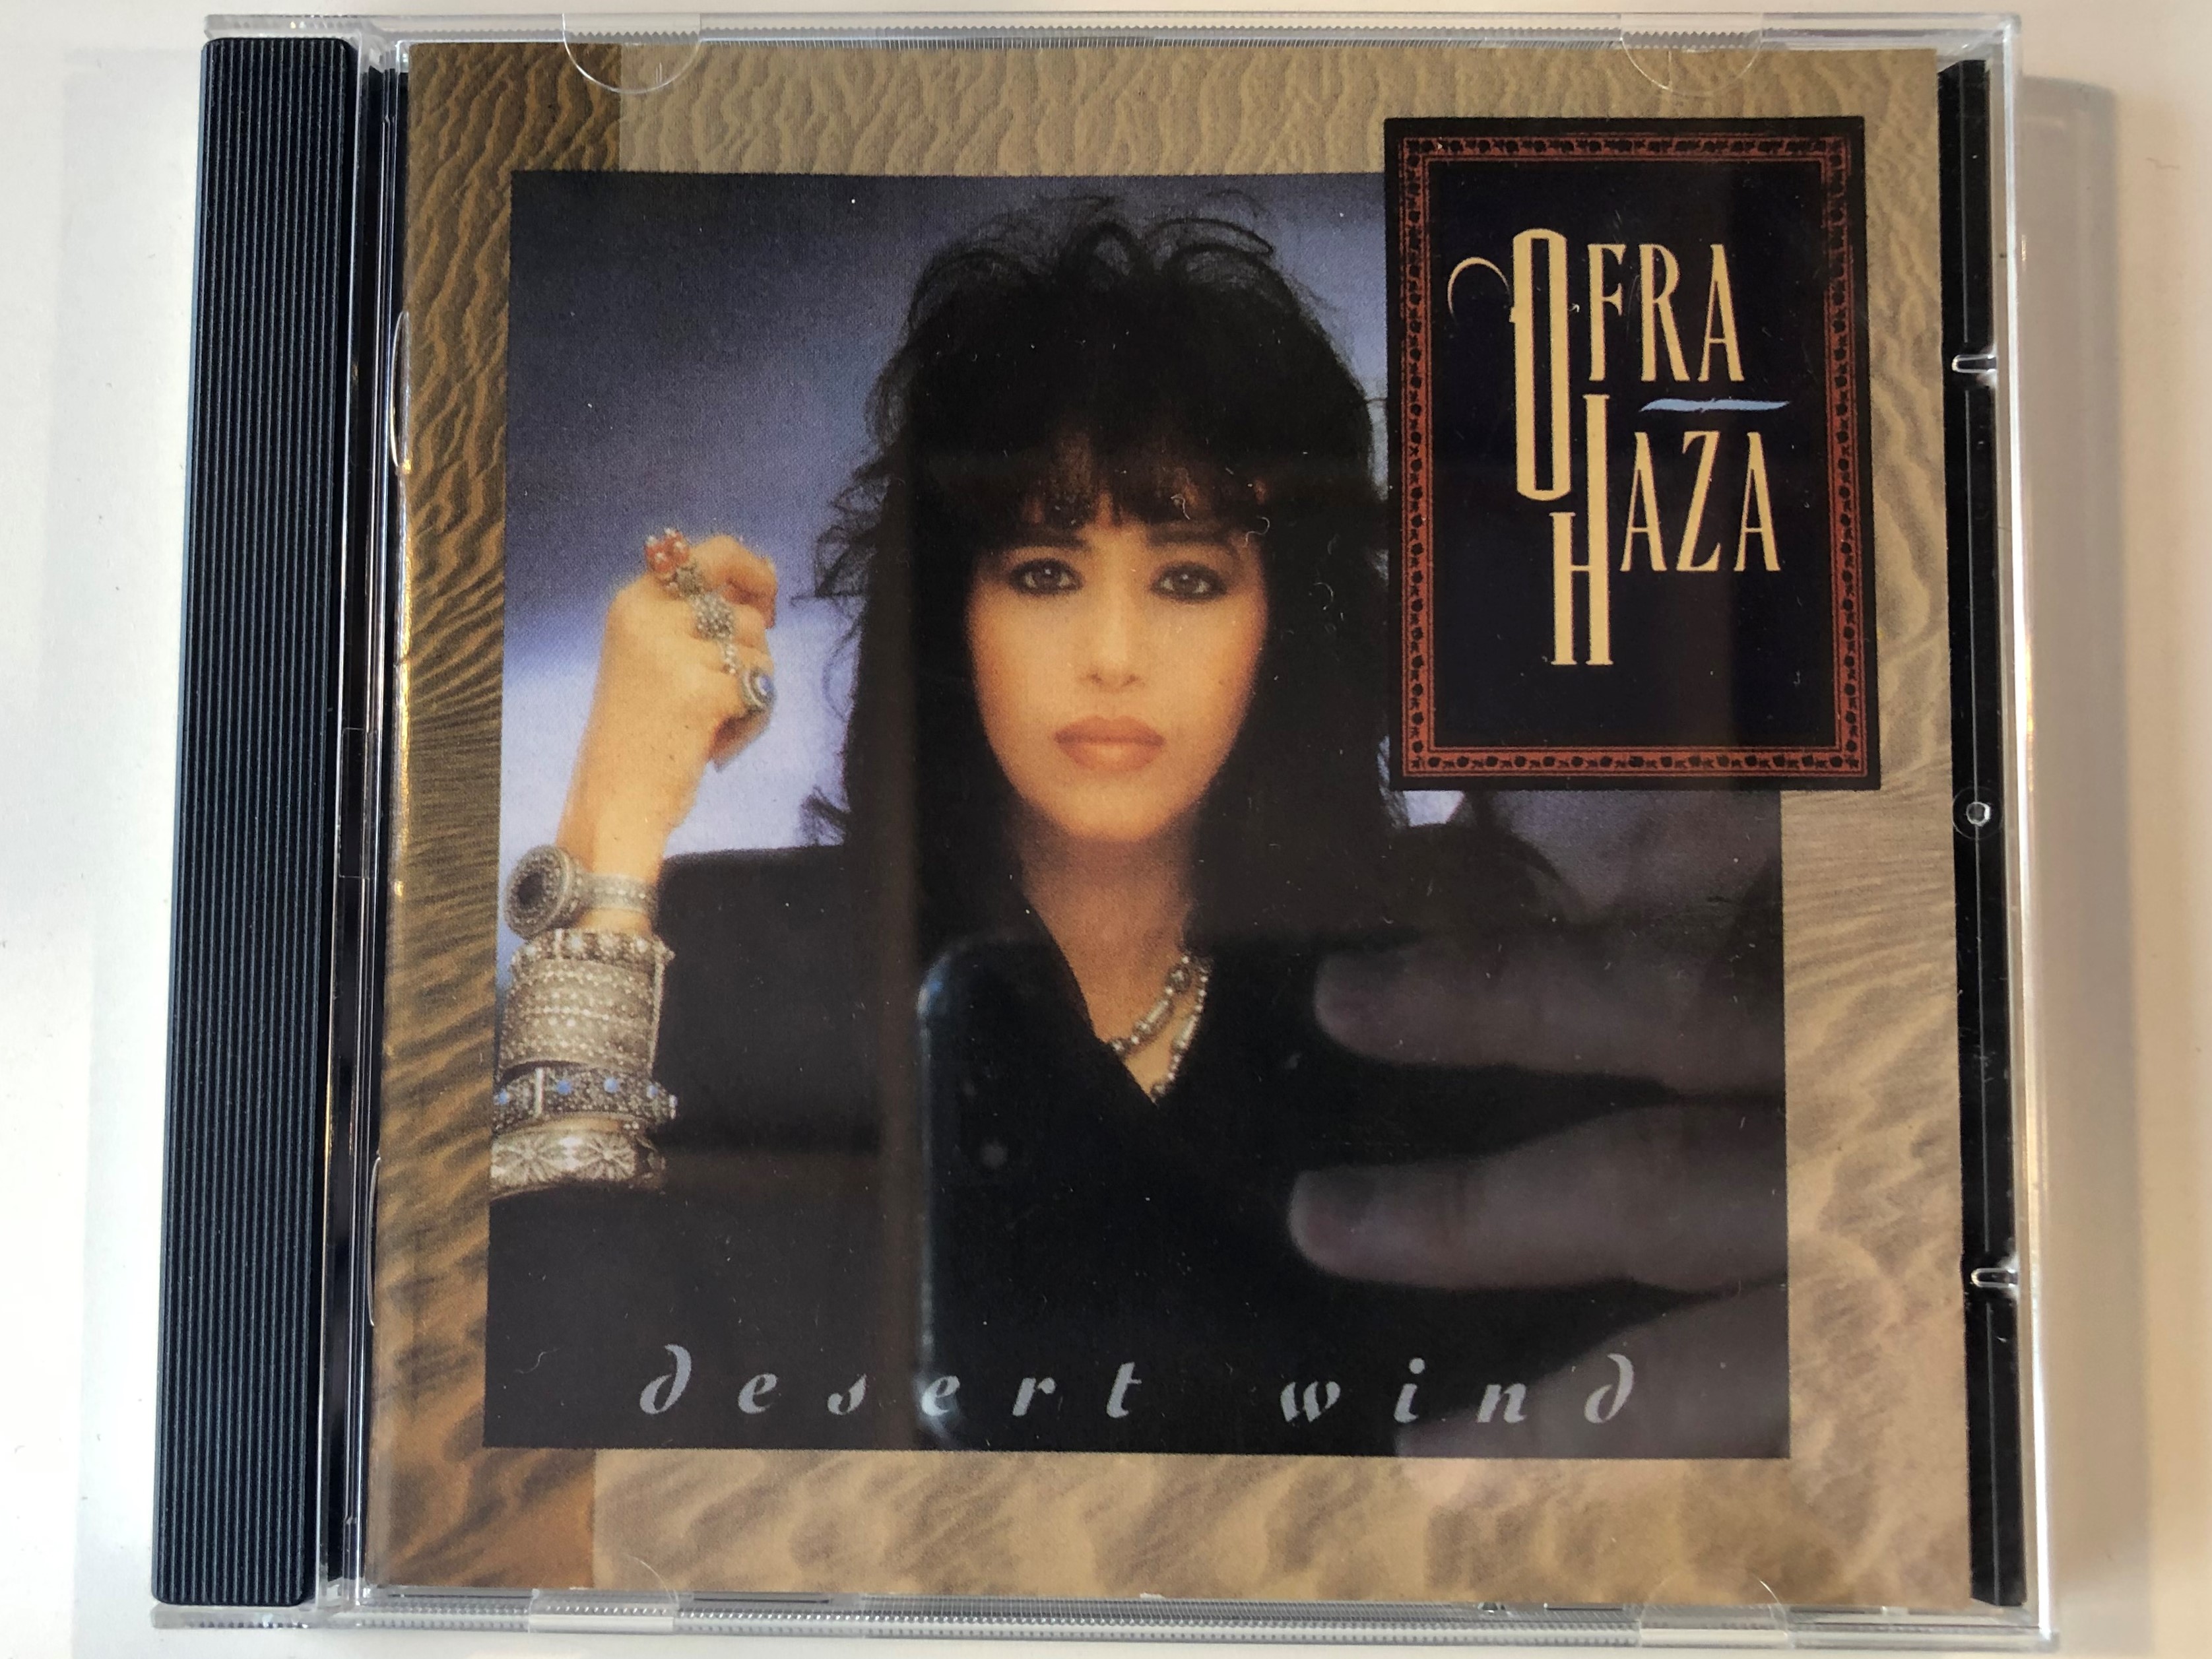 ofra-haza-desert-wind-wea-audio-cd-1989-2292-46249-2-1-.jpg